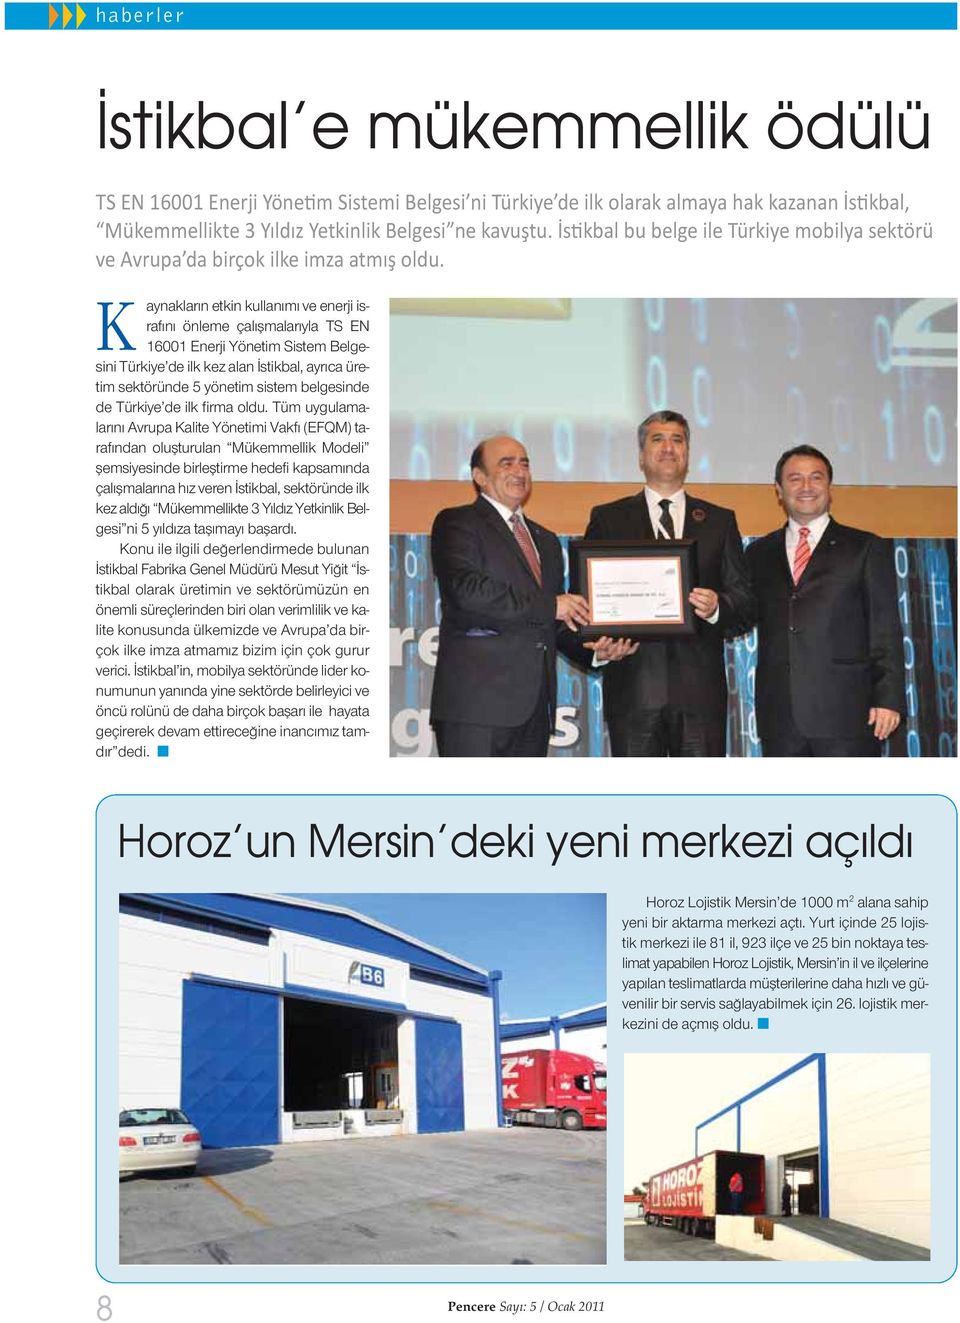 K aynakların etkin kullanımı ve enerji israfını önleme çalışmalarıyla TS EN 16001 Enerji Yönetim Sistem Belgesini Türkiye de ilk kez alan İstikbal, ayrıca üretim sektöründe 5 yönetim sistem